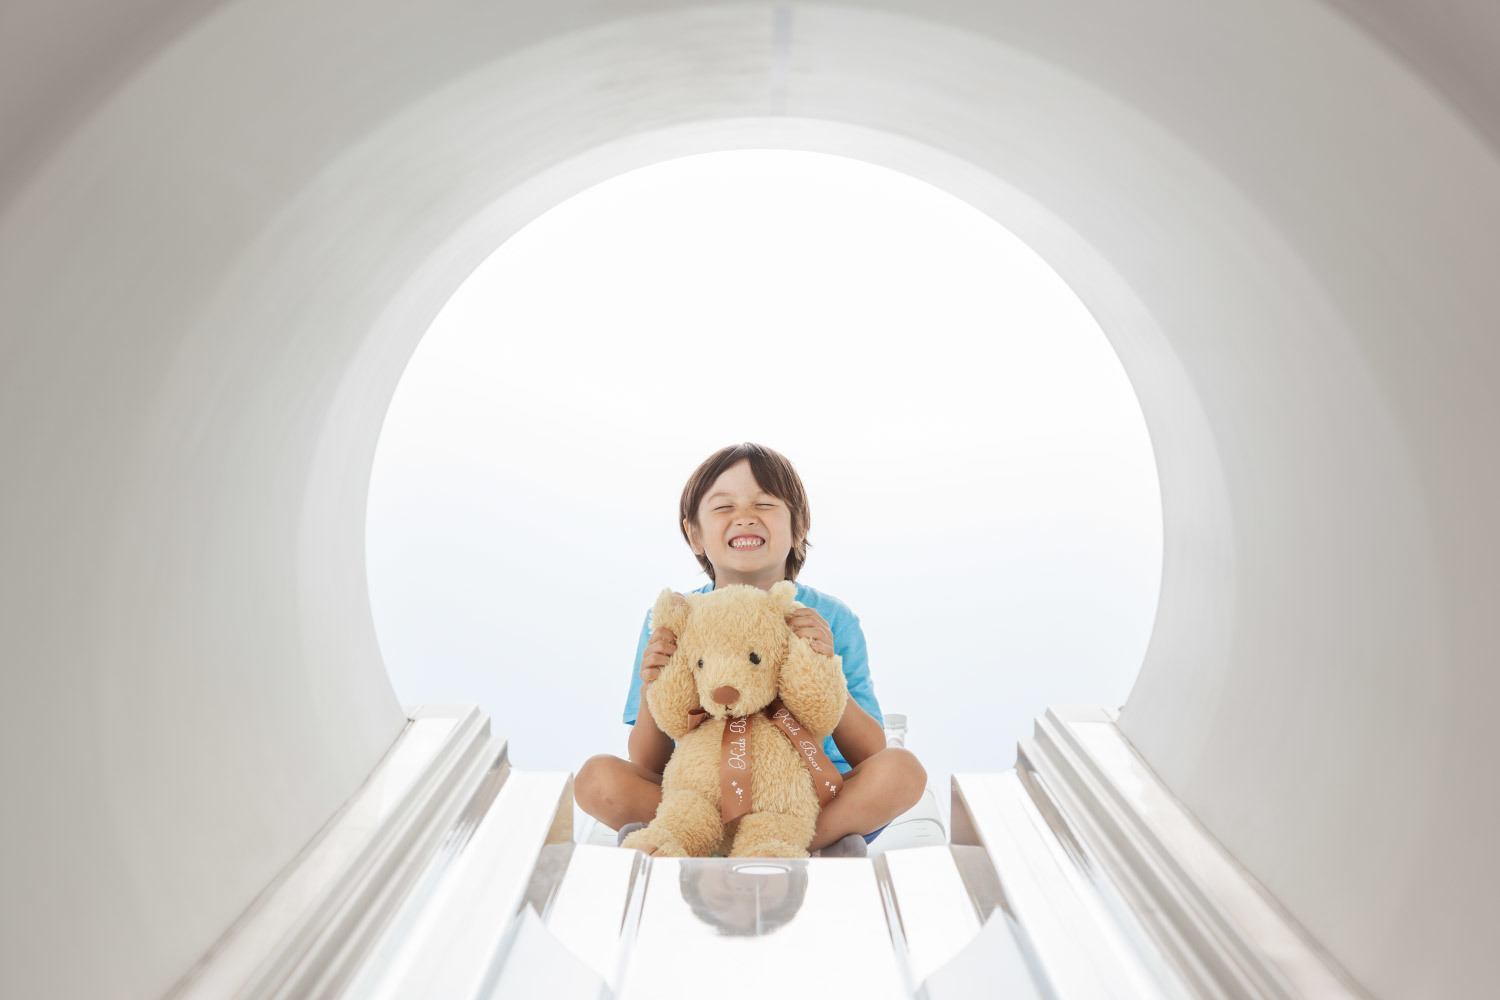 Innenansicht des Vantage_Galan_3T MRT Geräts mit Kind als Patient